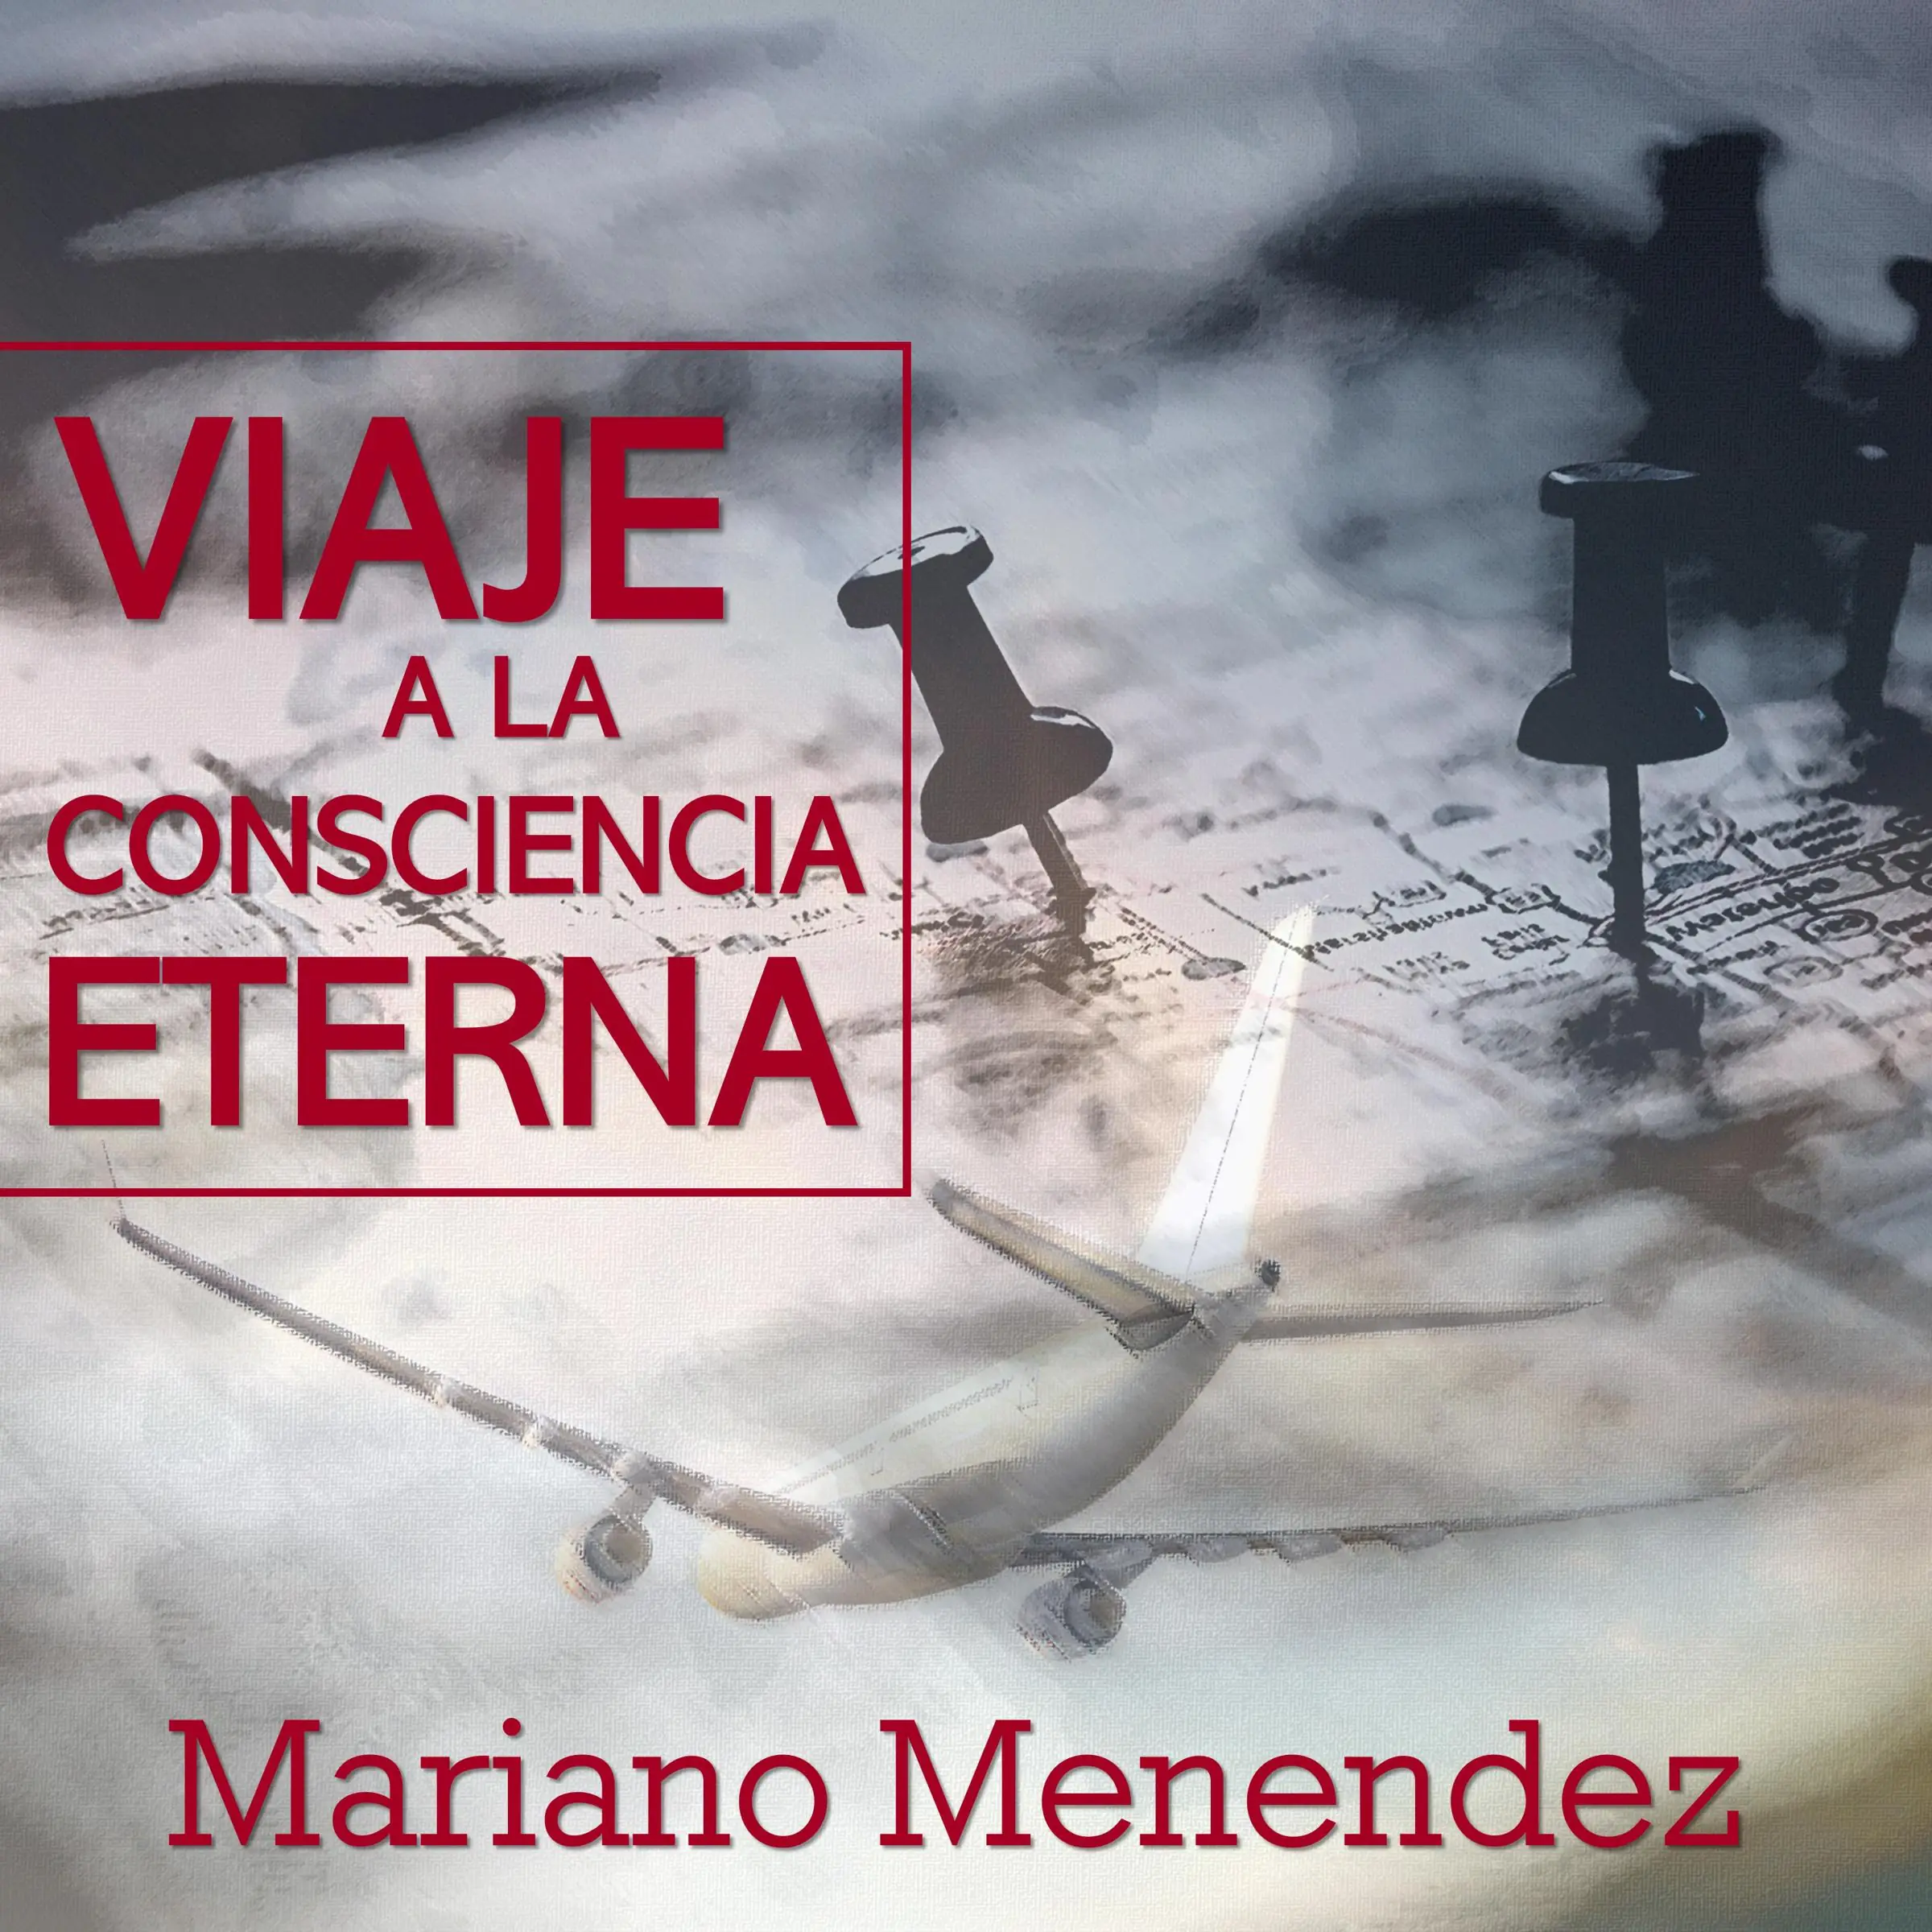 Viaje a la Consciencia Eterna by Mariano Menendez Audiobook